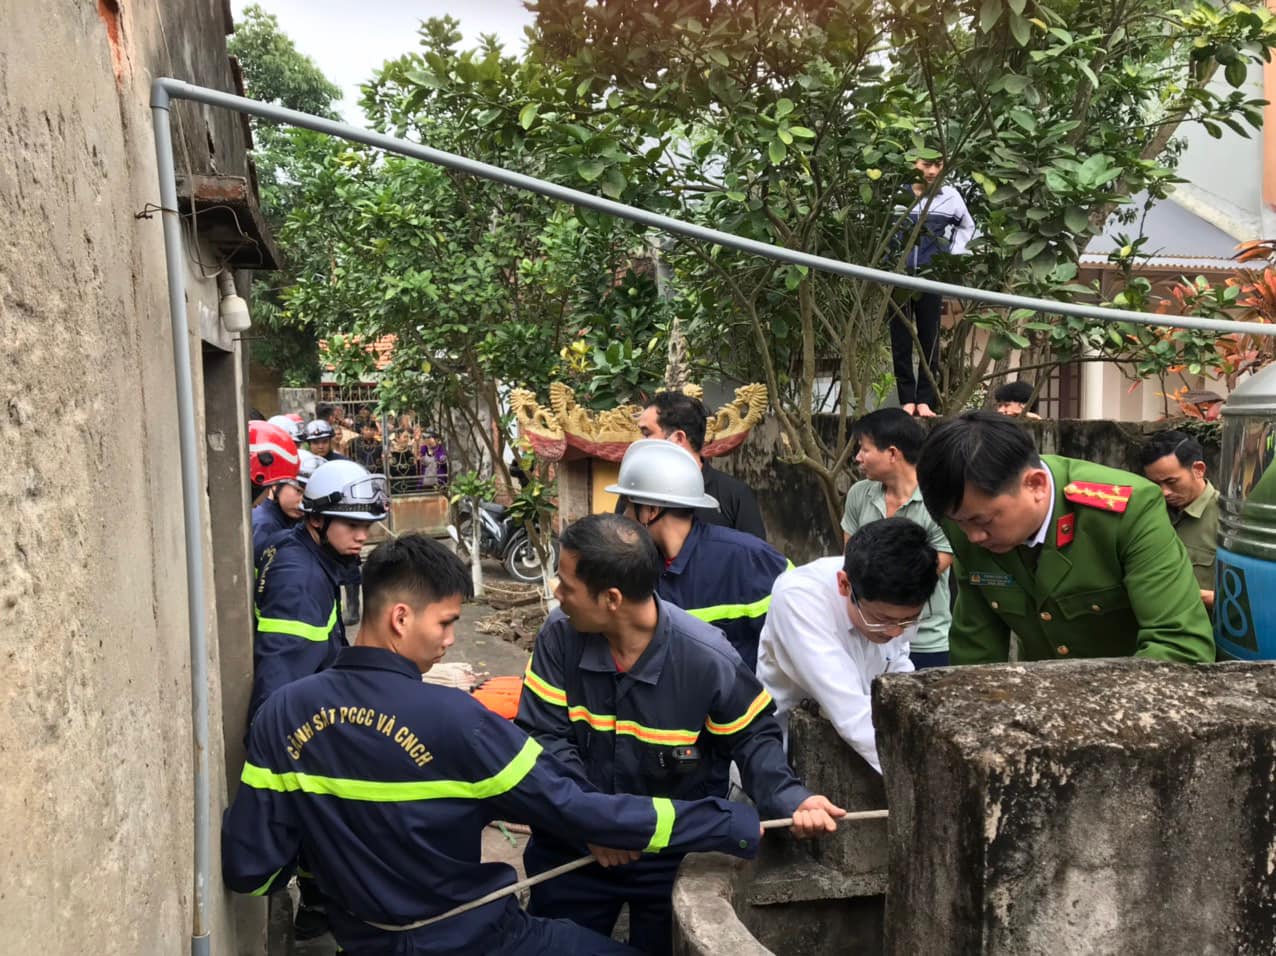 Ngã xuống giếng sâu 25 mét, người đàn ông ở Hà Nội được cảnh sát cứu kịp thời - Ảnh 1.